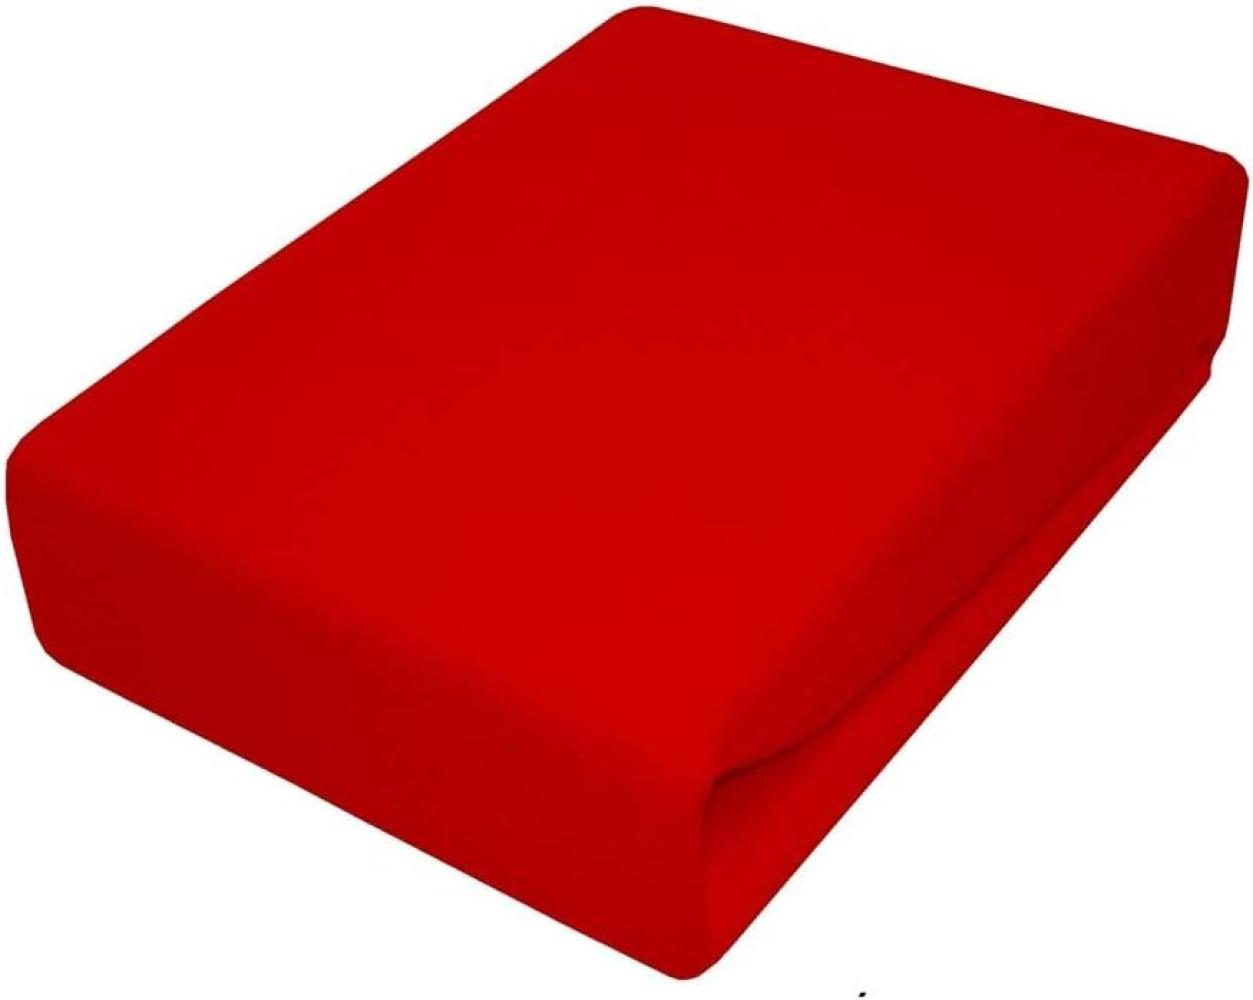 Spannbettlaken Kinderbett JERSEY 60x120 70x140 80x160 Top Qualität Hohe Gewicht 180g/m2 (80x160, Rot) Bild 1